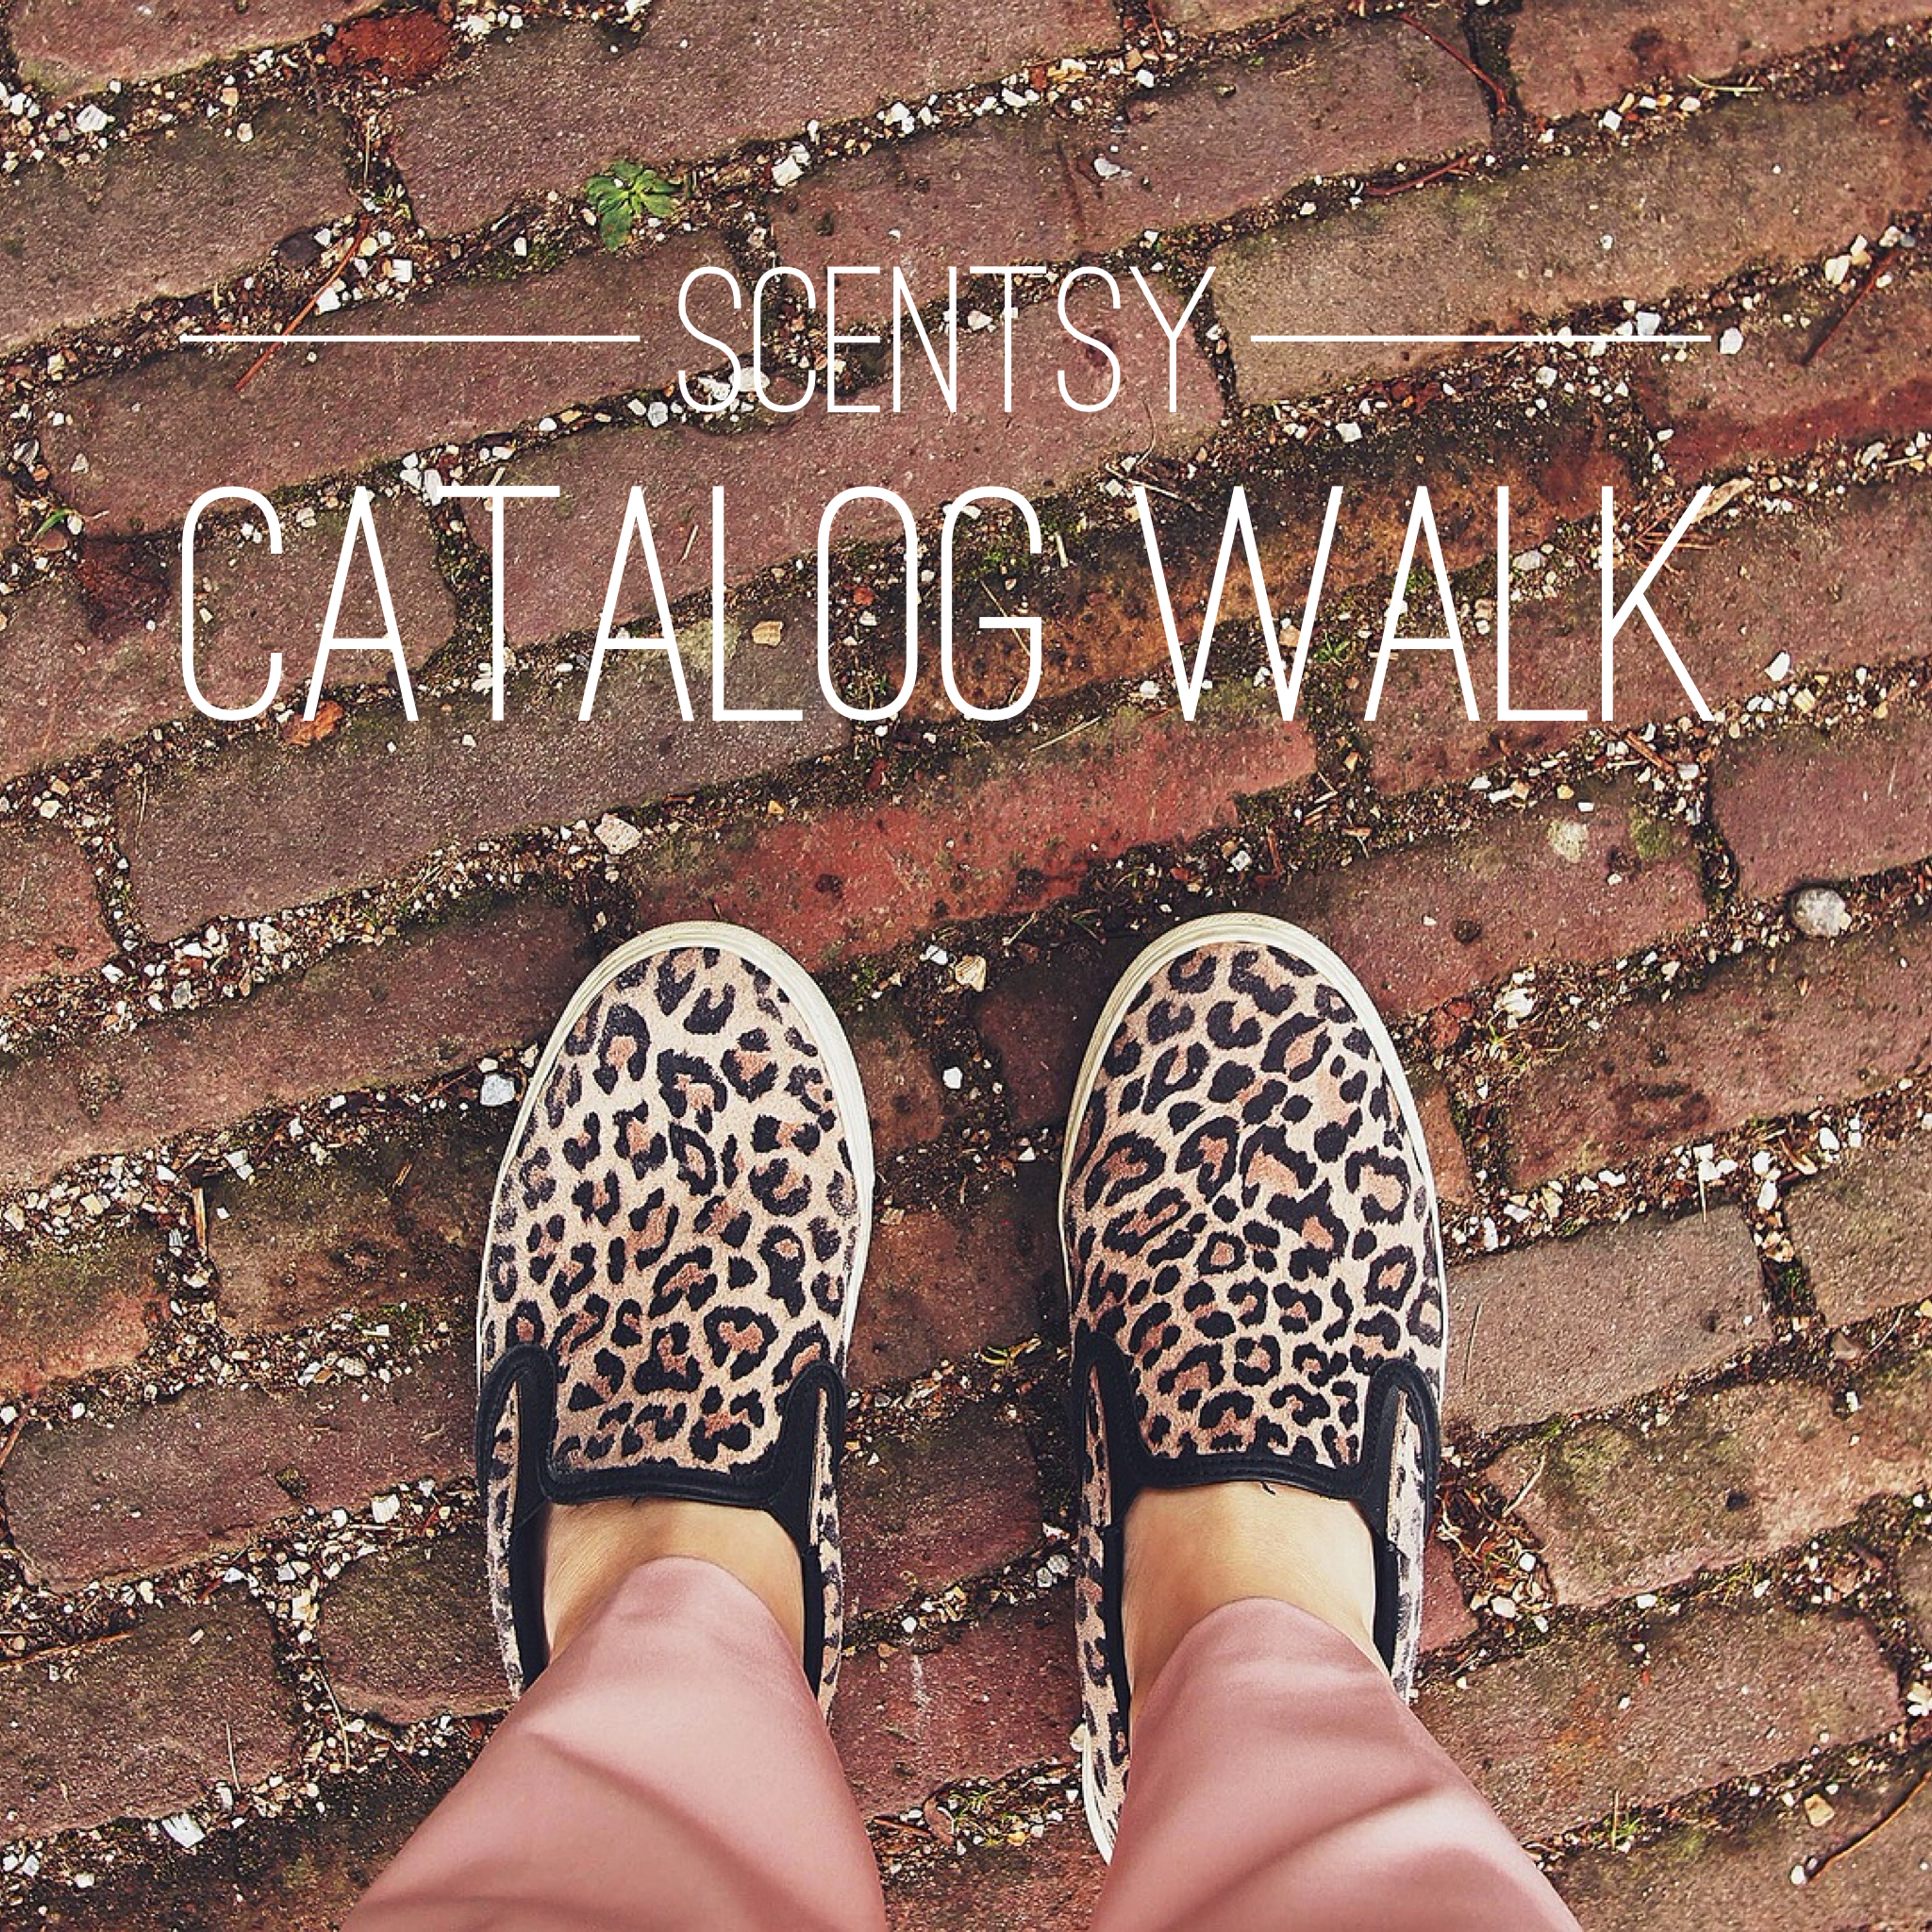 Scentsy Catalog Walk